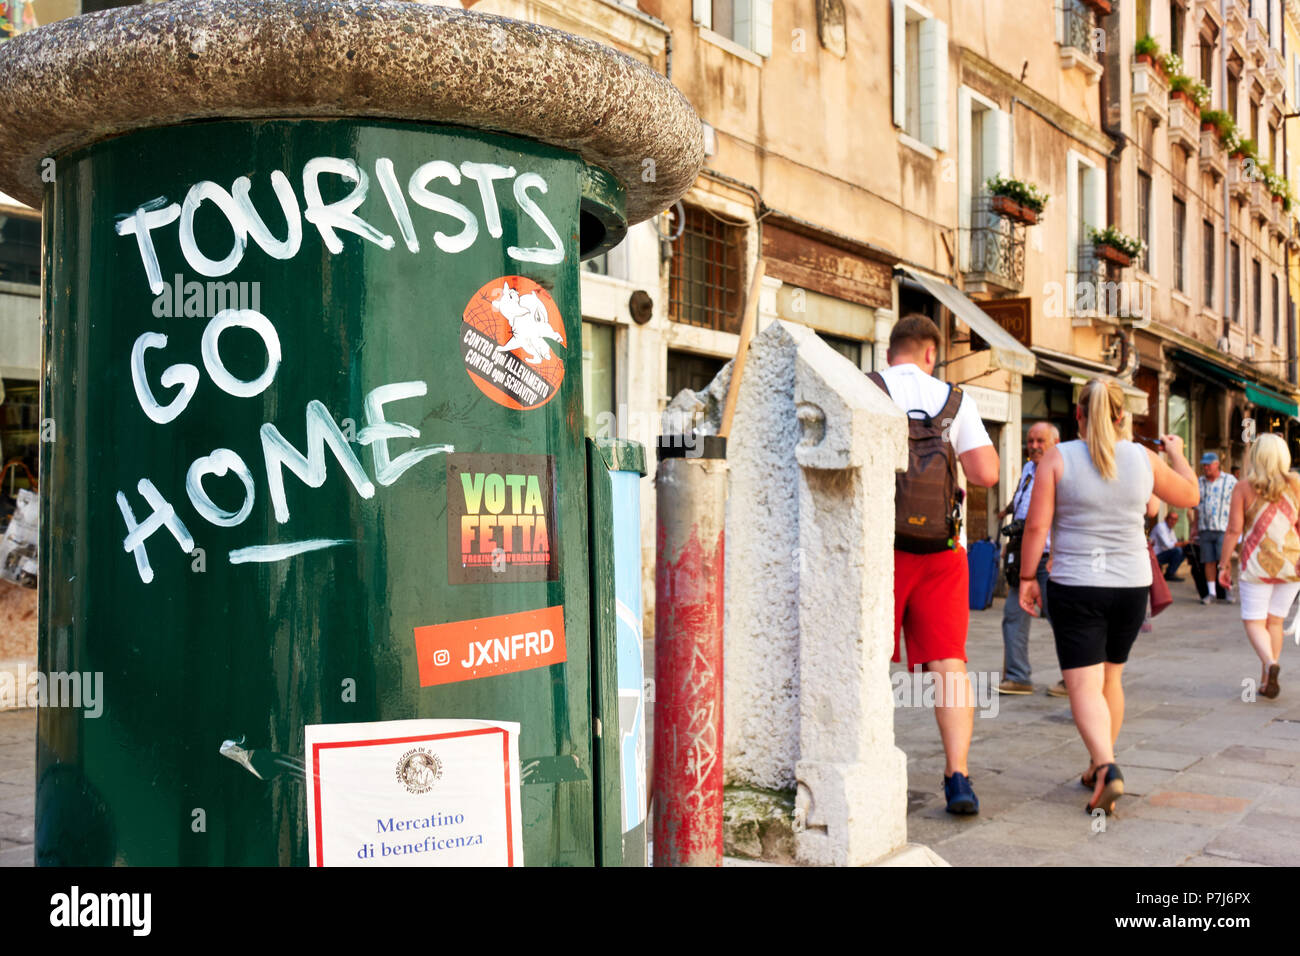 Venise, Italie - 17 juin 2018 : 'touristes' go home inscription sur le bac de litière à Venise Banque D'Images